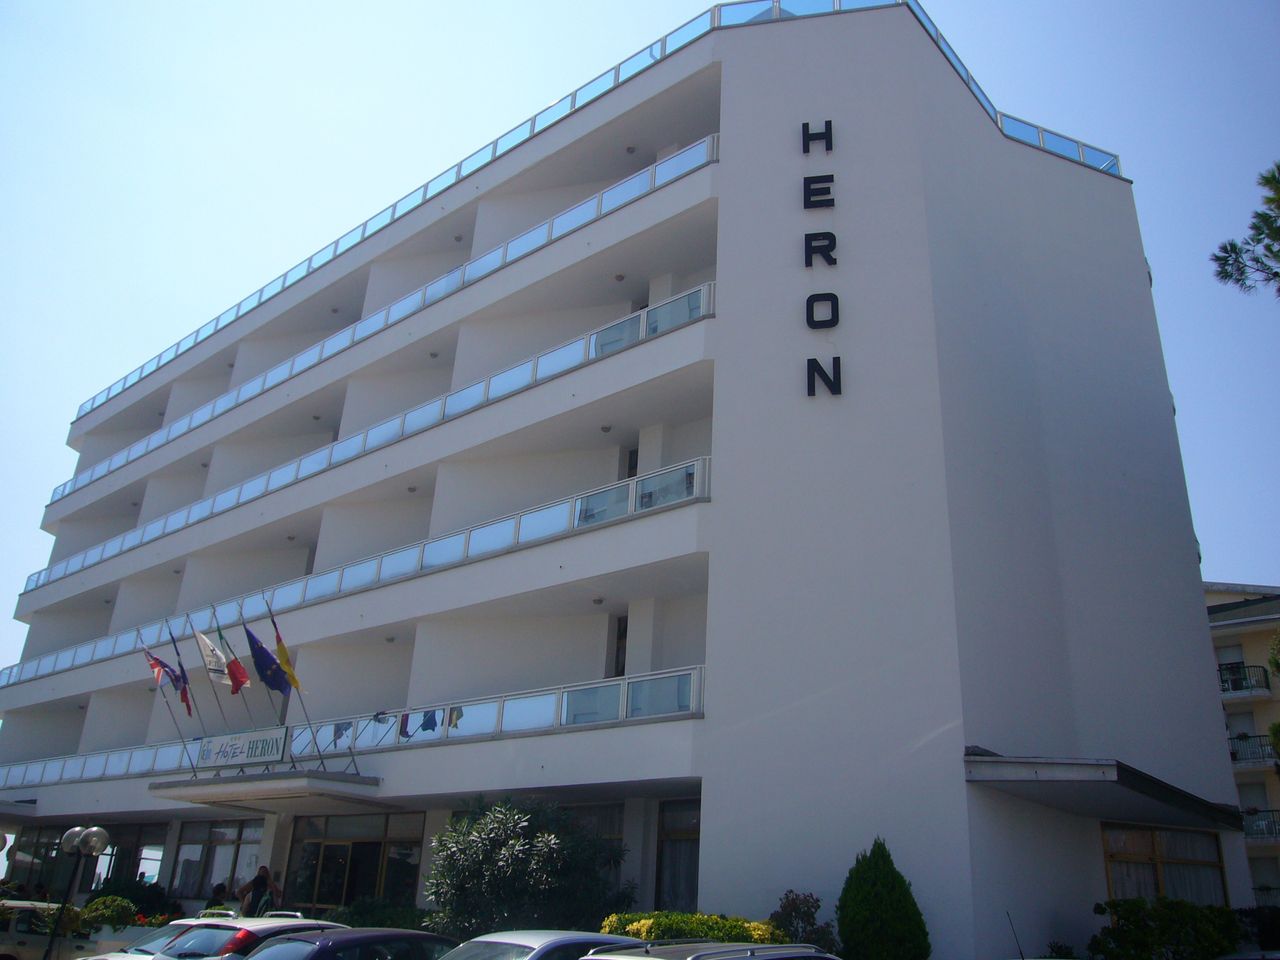 4 Tage Abschlaten im Hotel Heron mit HP